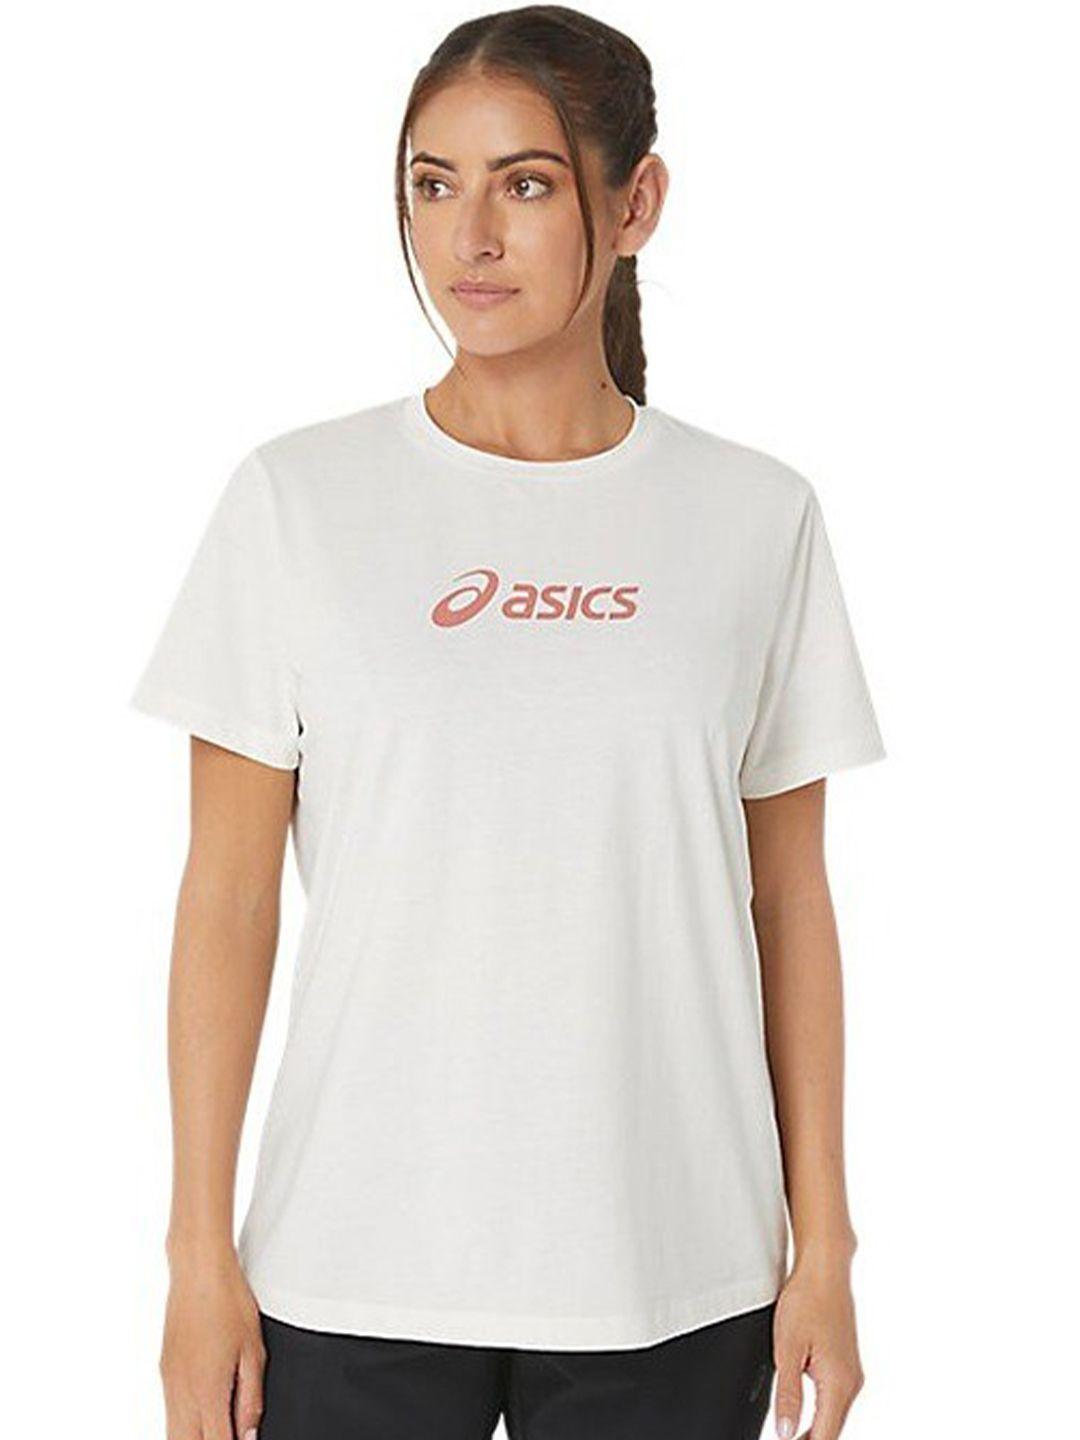 asics training core short sleeves round neck t-shirt